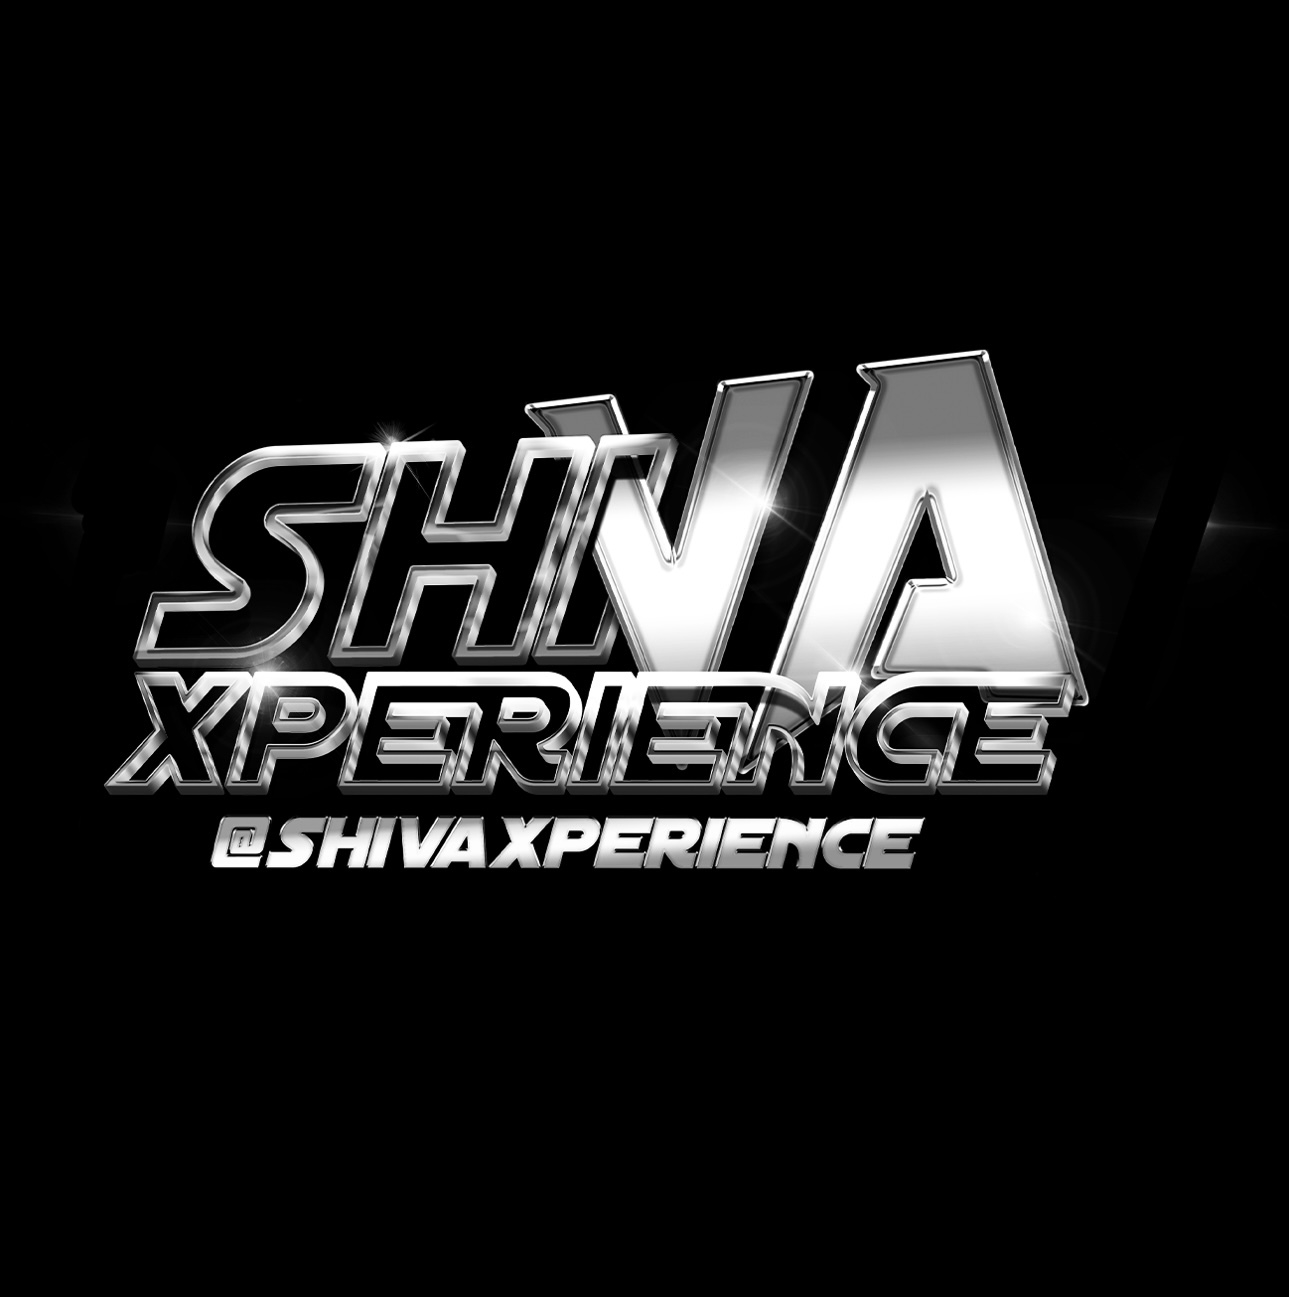 SHIVA XPERIENCE